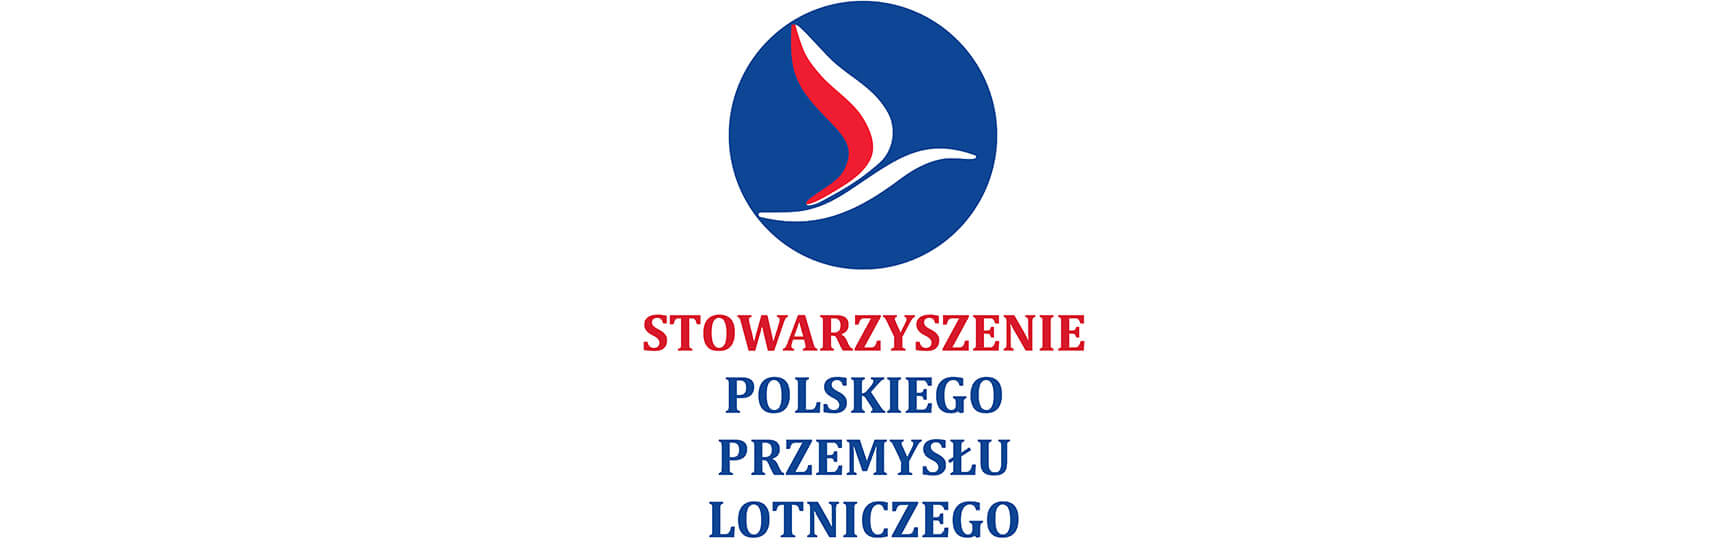 Stowarzyszenie Polskiego Przemysłu Lotniczego